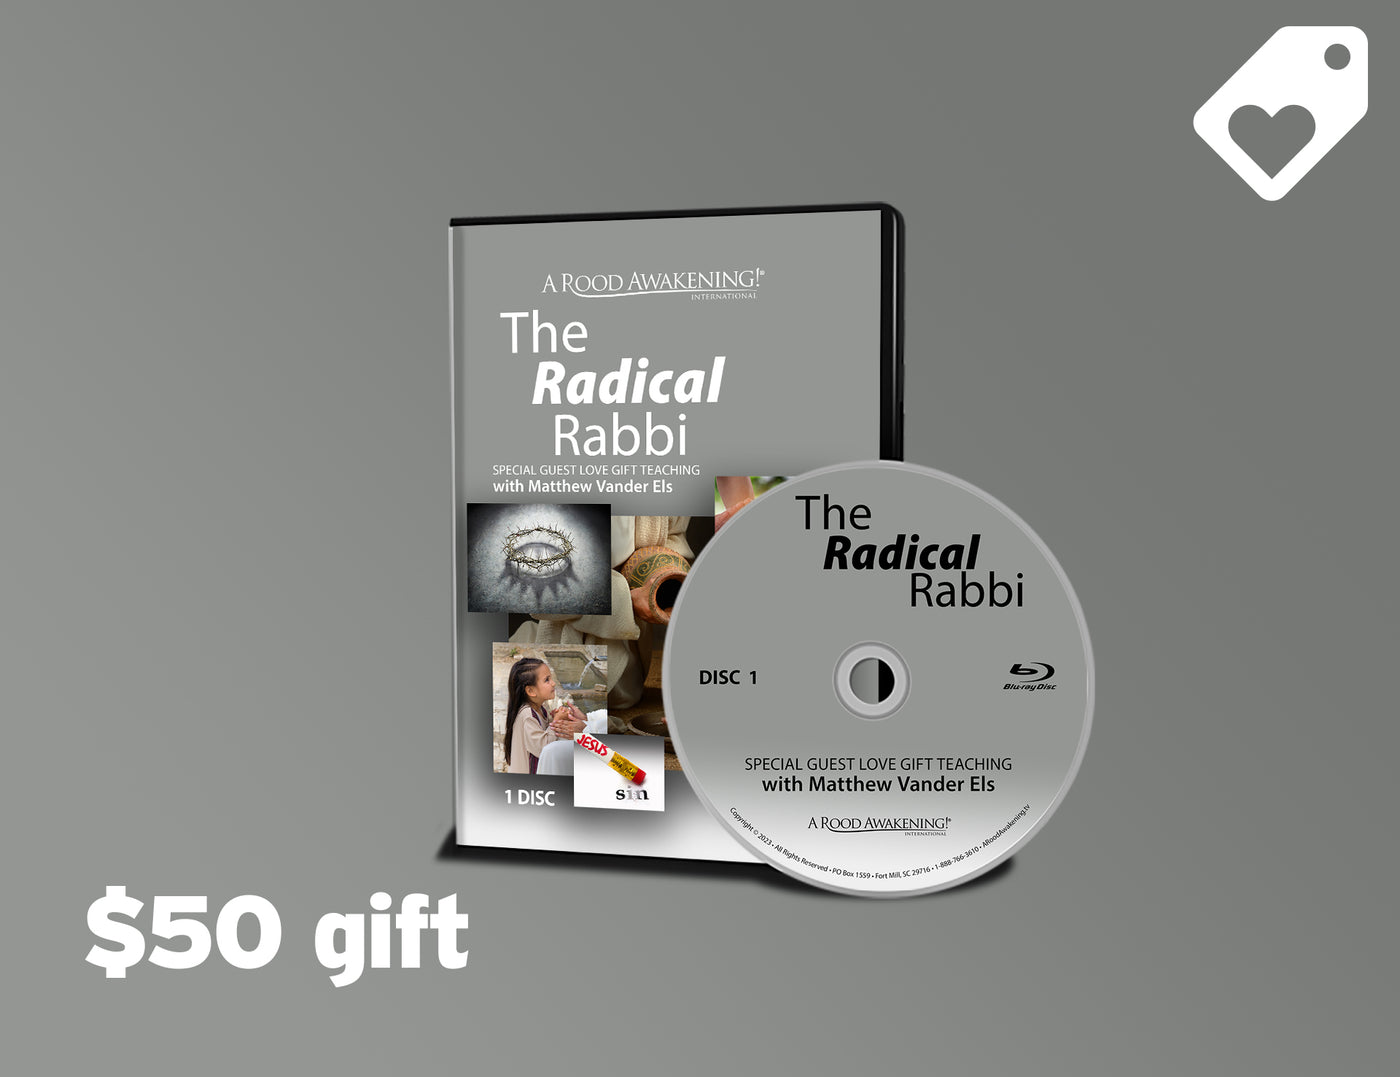 February 2023 Love Gift Teaching: "The Radical Rabbi"